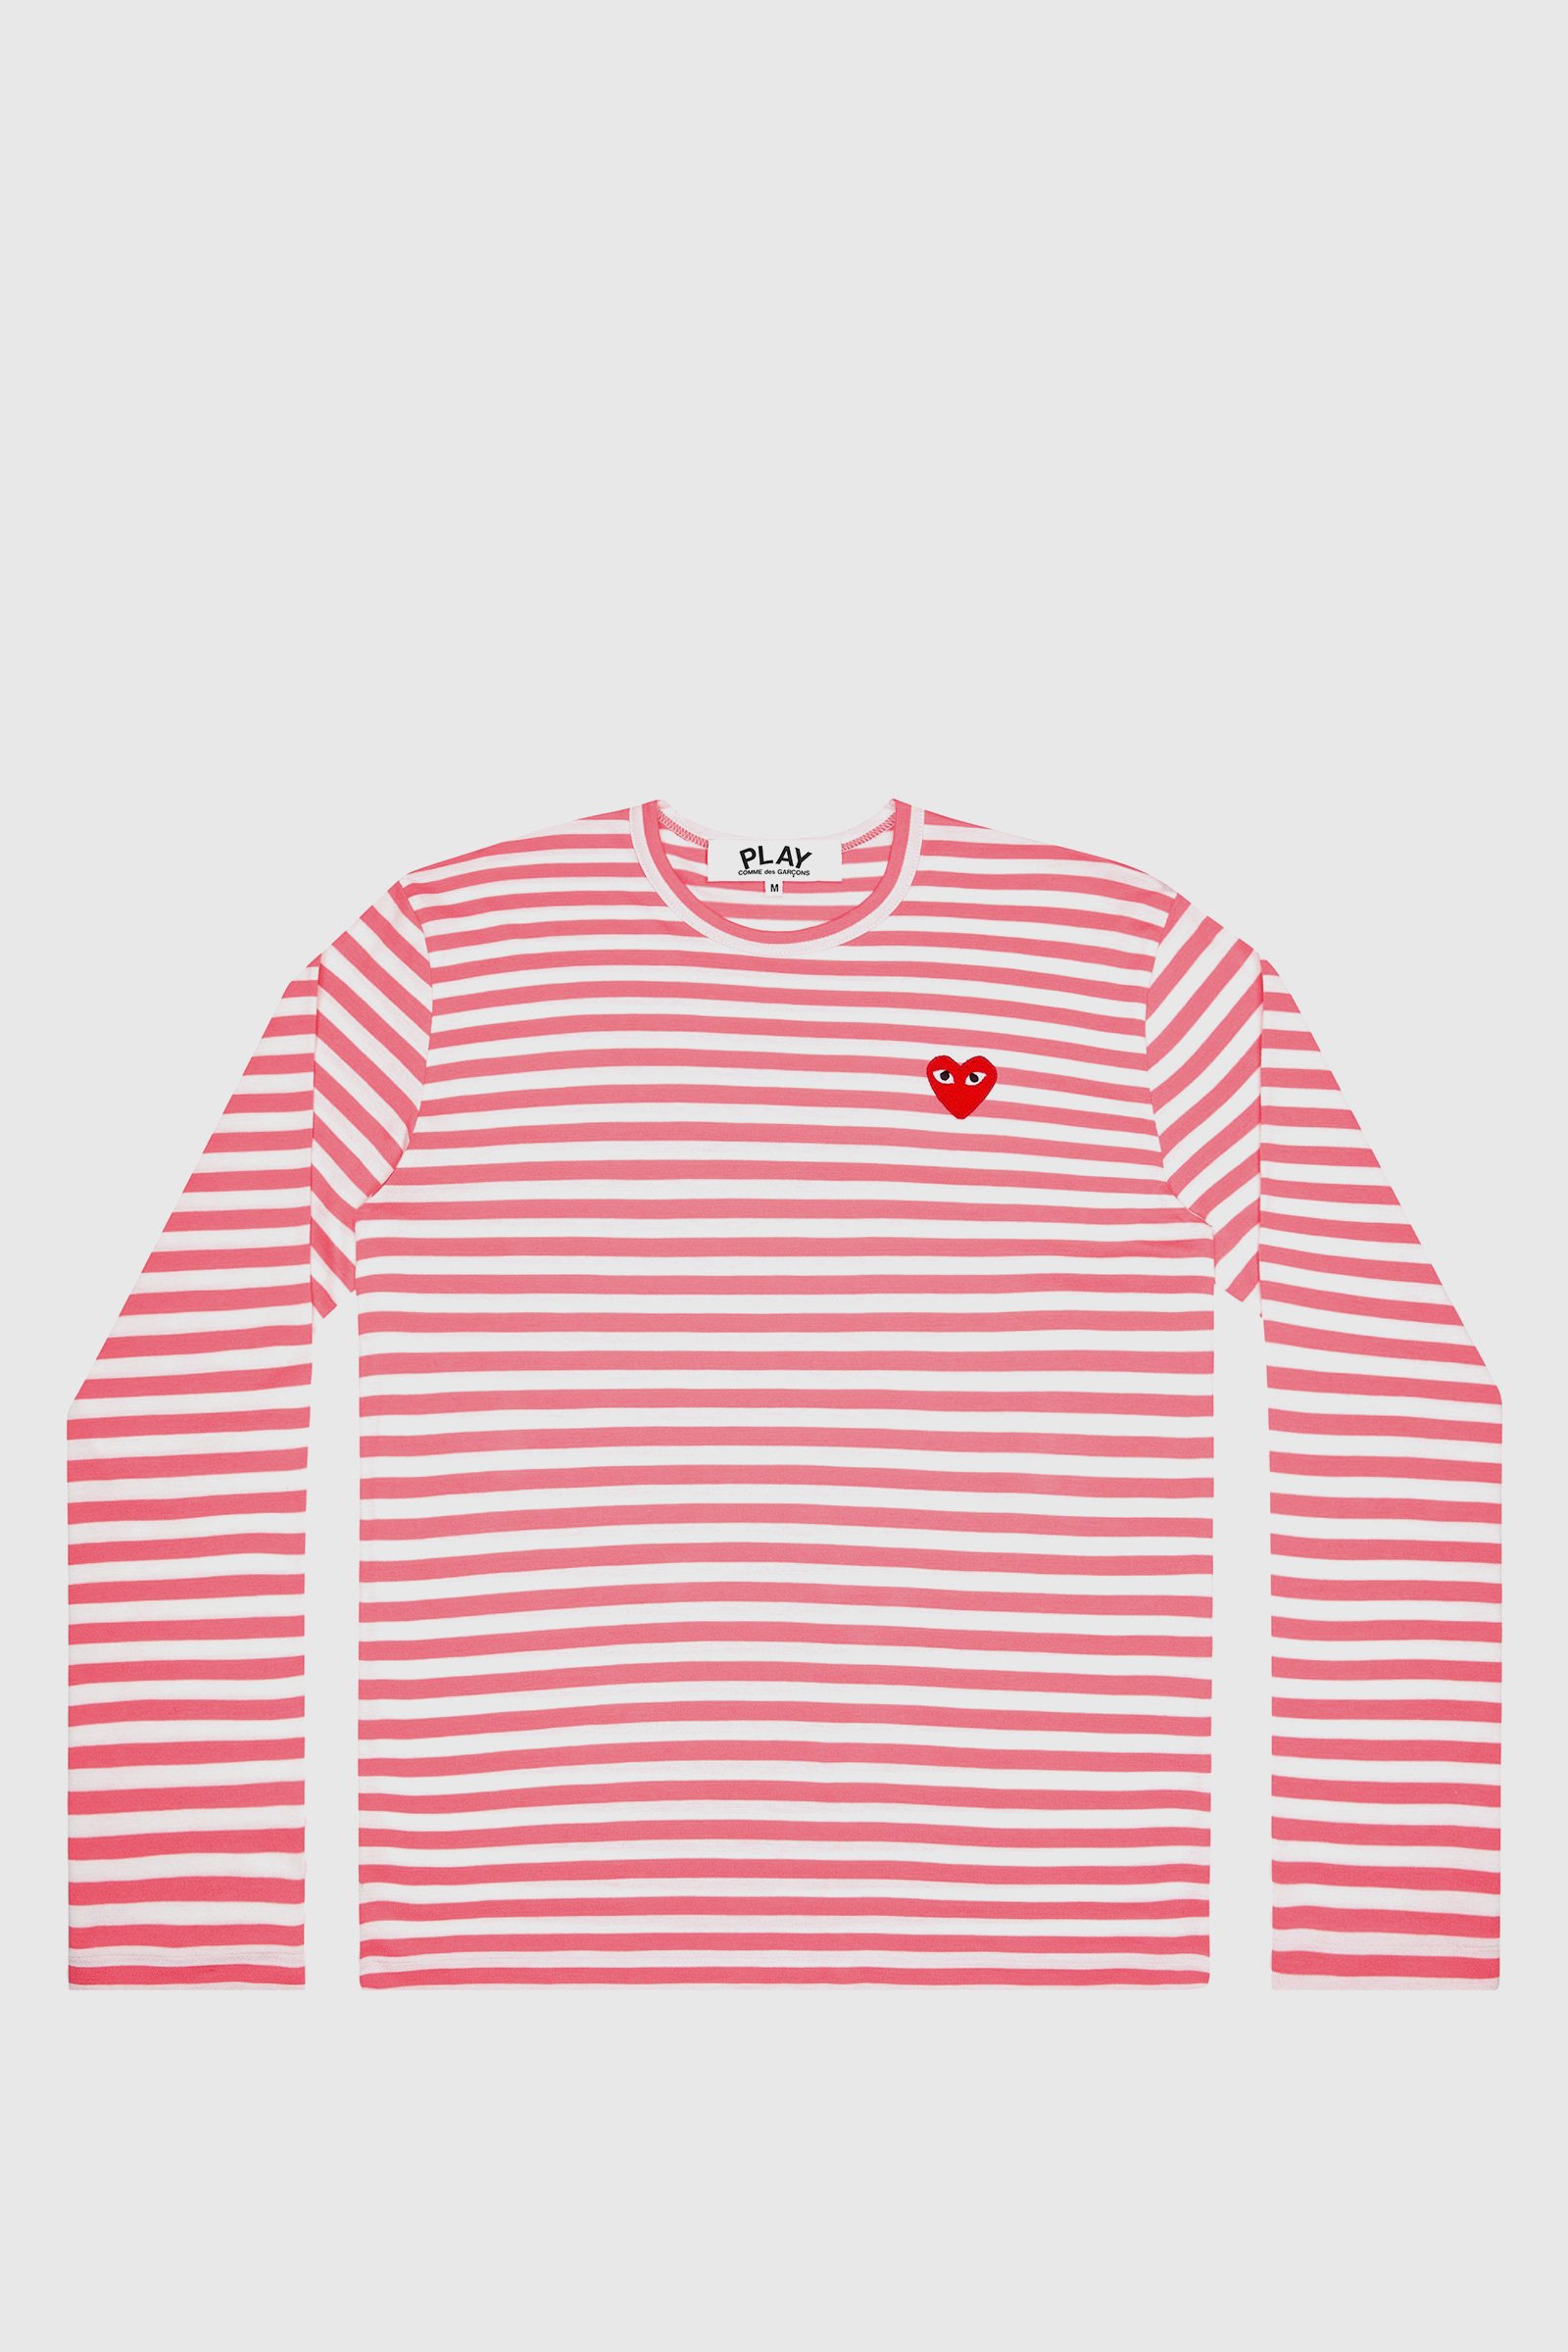 stamtavle fordrejer emulsion Comme des Garçons PLAY Play Ladies Striped T-shirt Pink | WoodWood.com